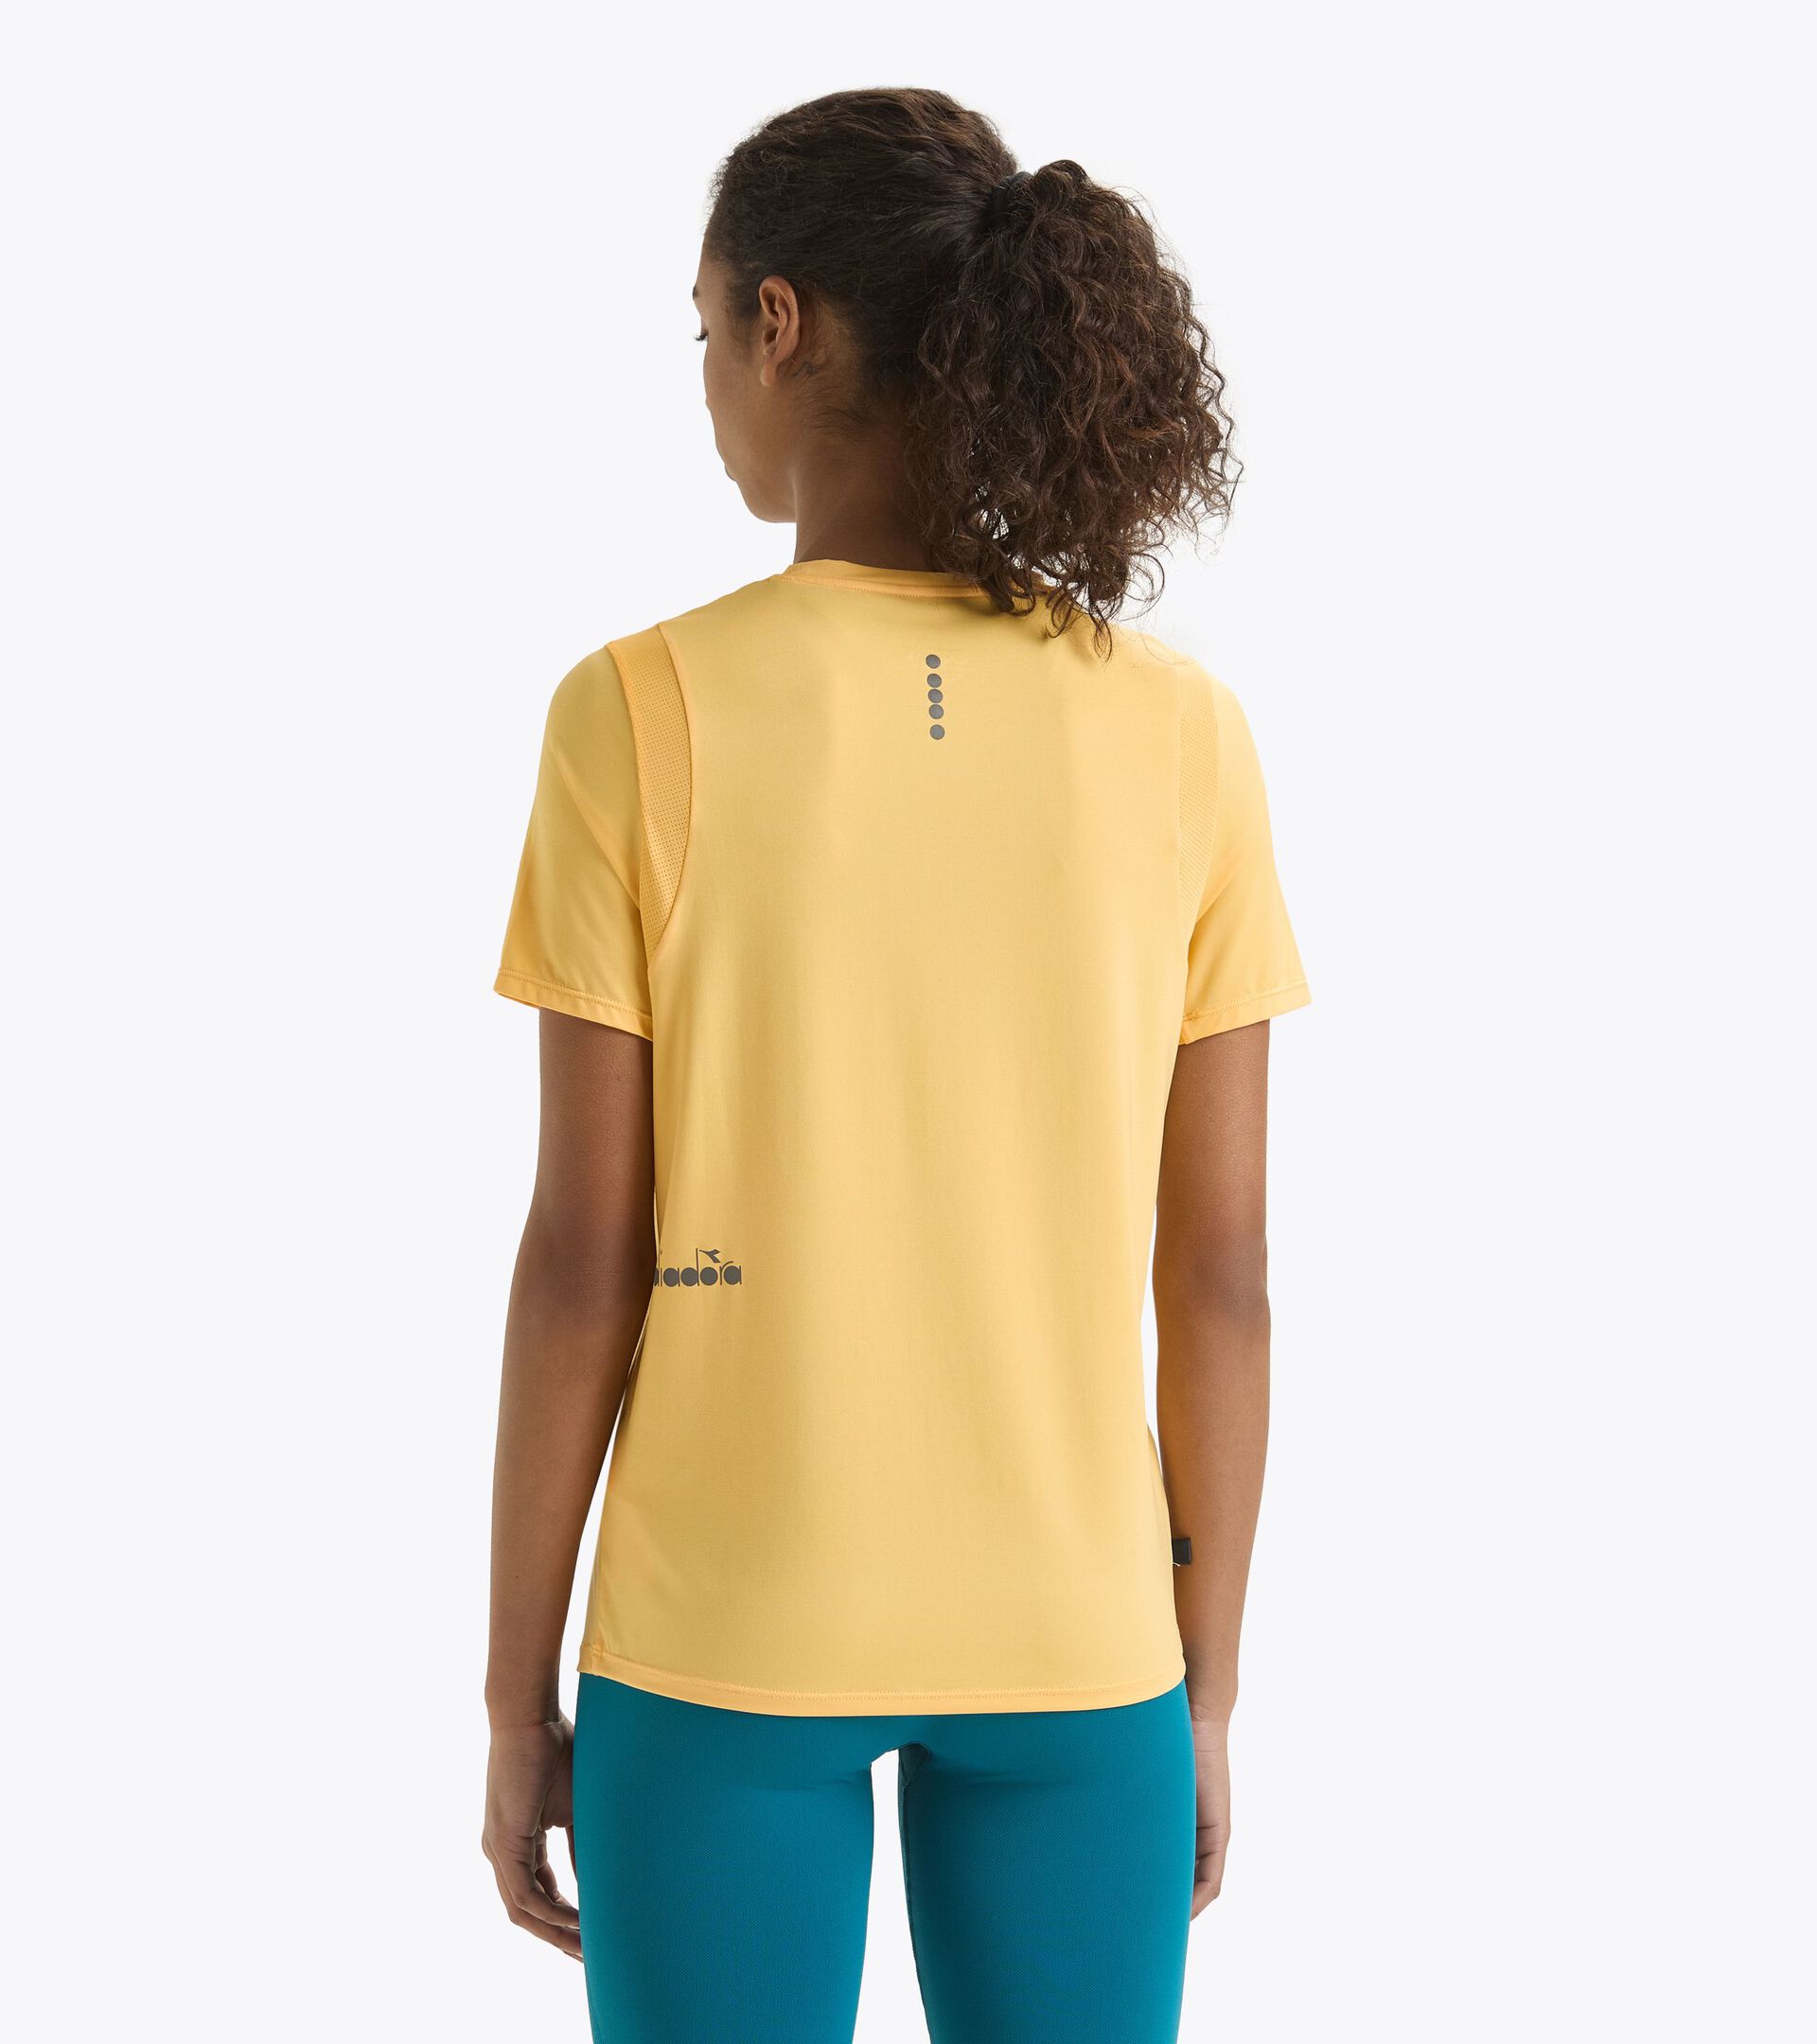 T-shirt de running - Femme L. SS T-SHIRT TECH RUN CREW JAUNE SOUCI CLAIR - Diadora